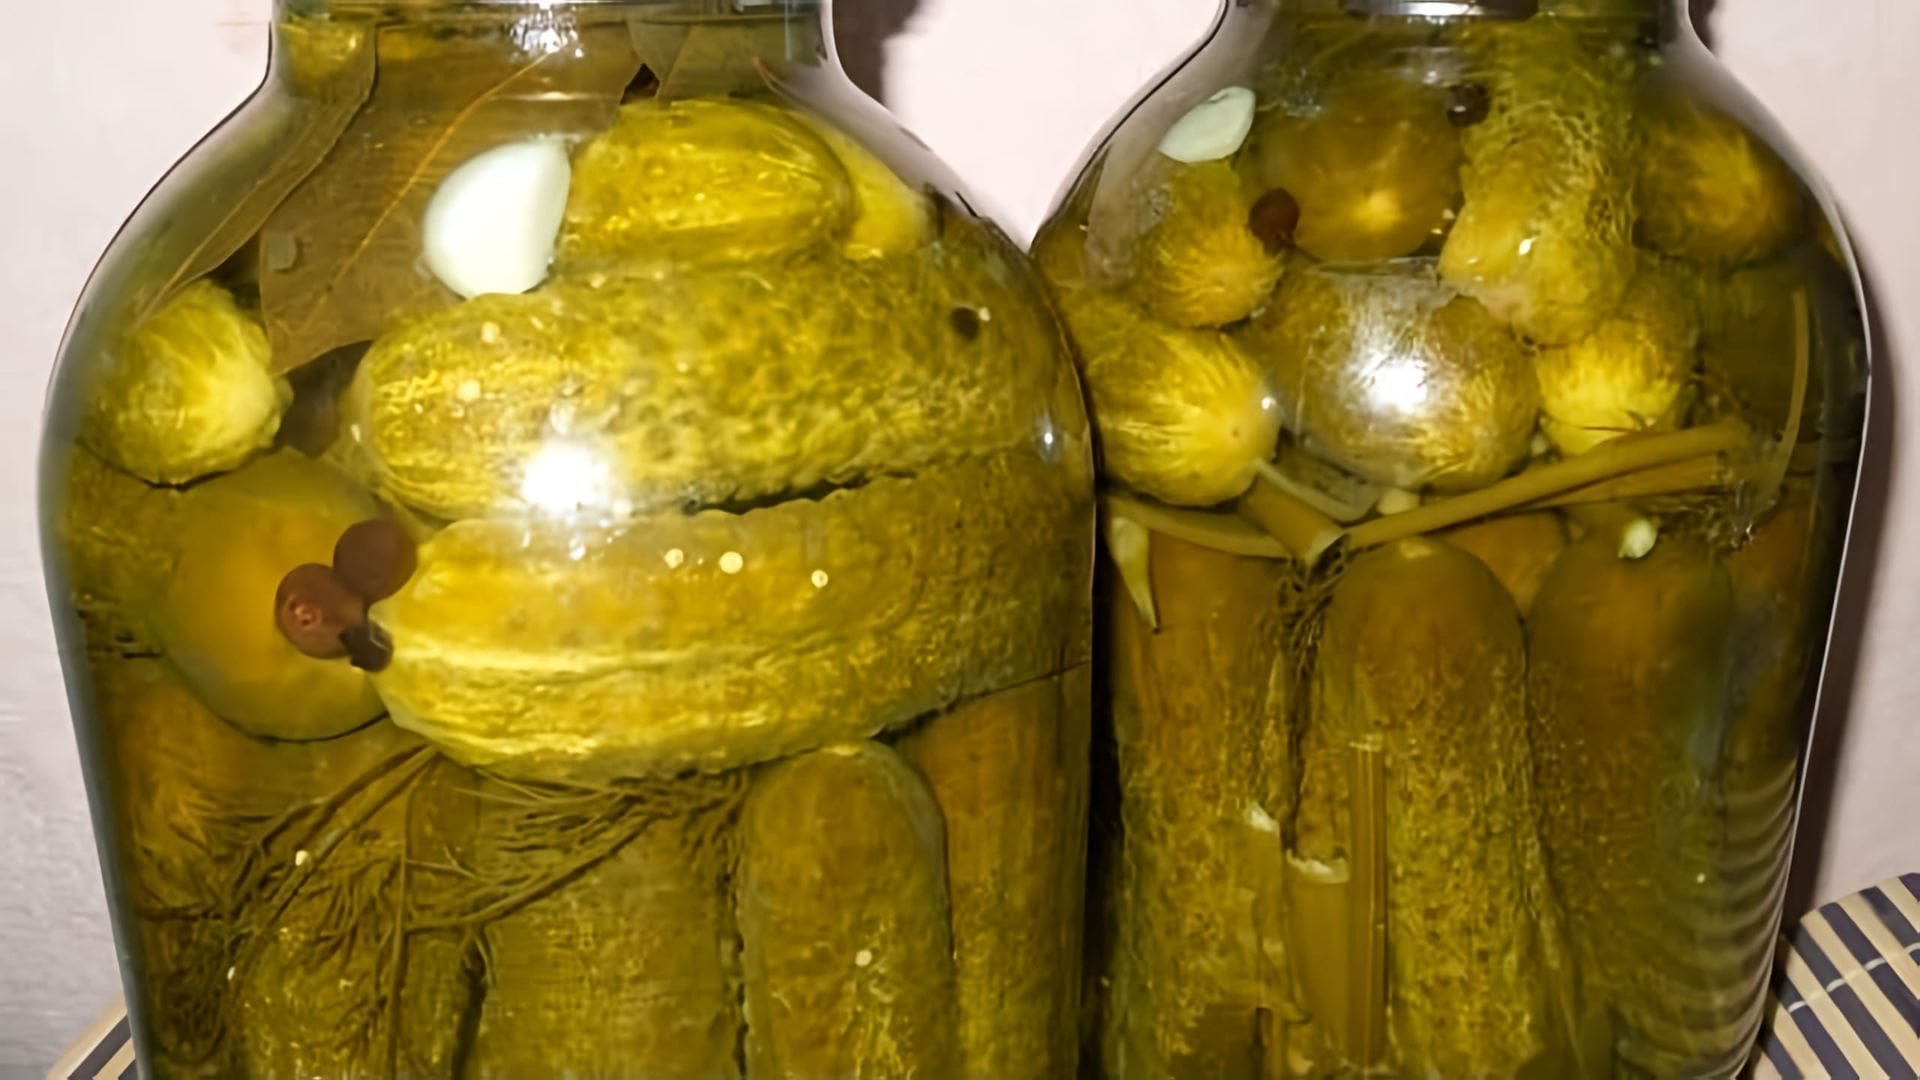 Видео демонстрирует рецепт приготовления хрустящих маринованных огурцов на зиму без использования уксуса или стерилизации